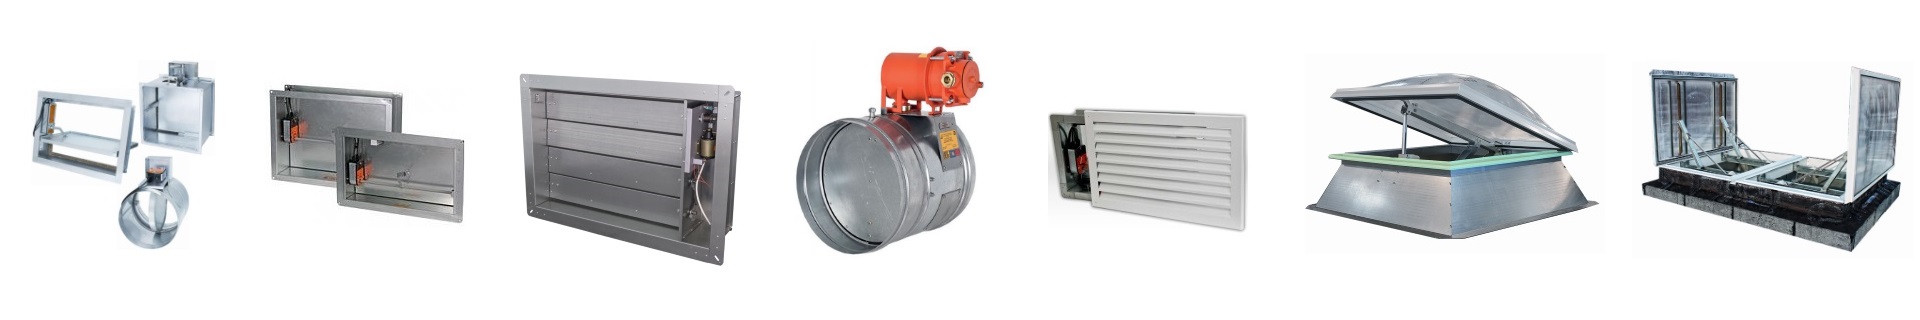 Противопожарные клапаны КПУ для систем вентиляции купить огнезадерживающий клапан КПУ